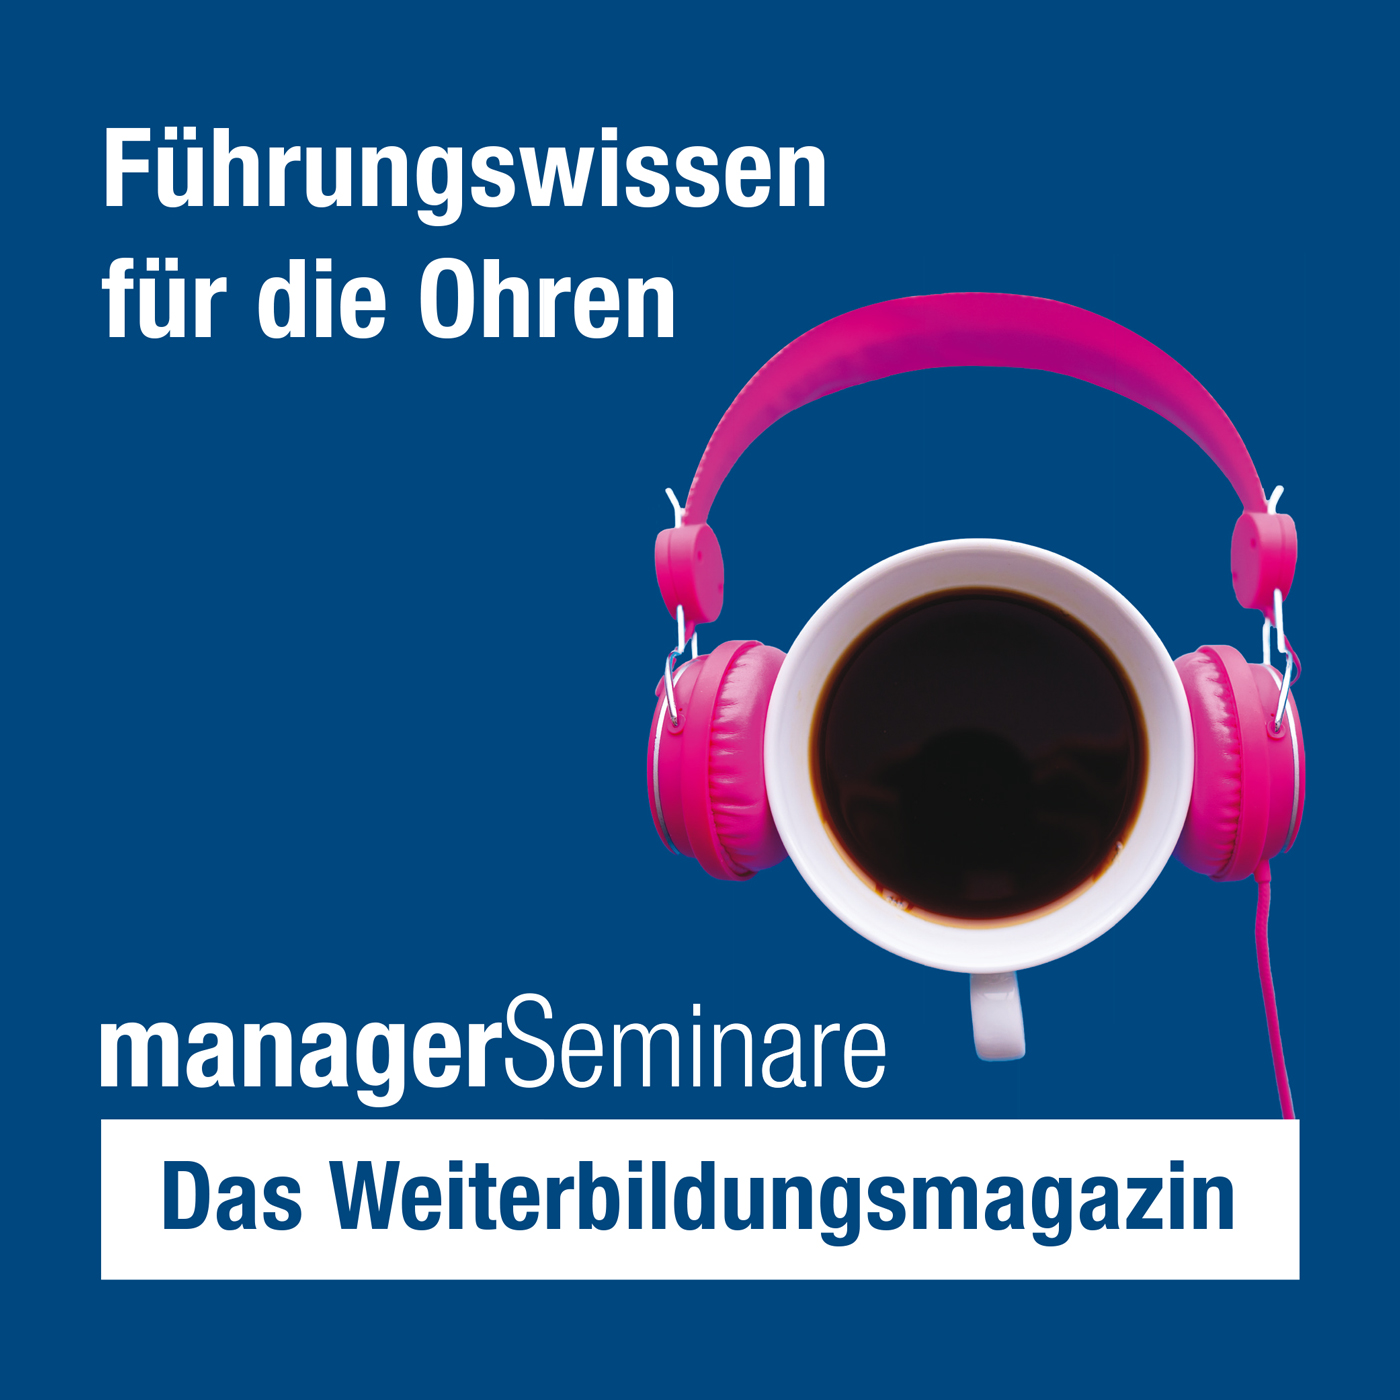 managerSeminare - Das Weiterbildungsmagazin logo